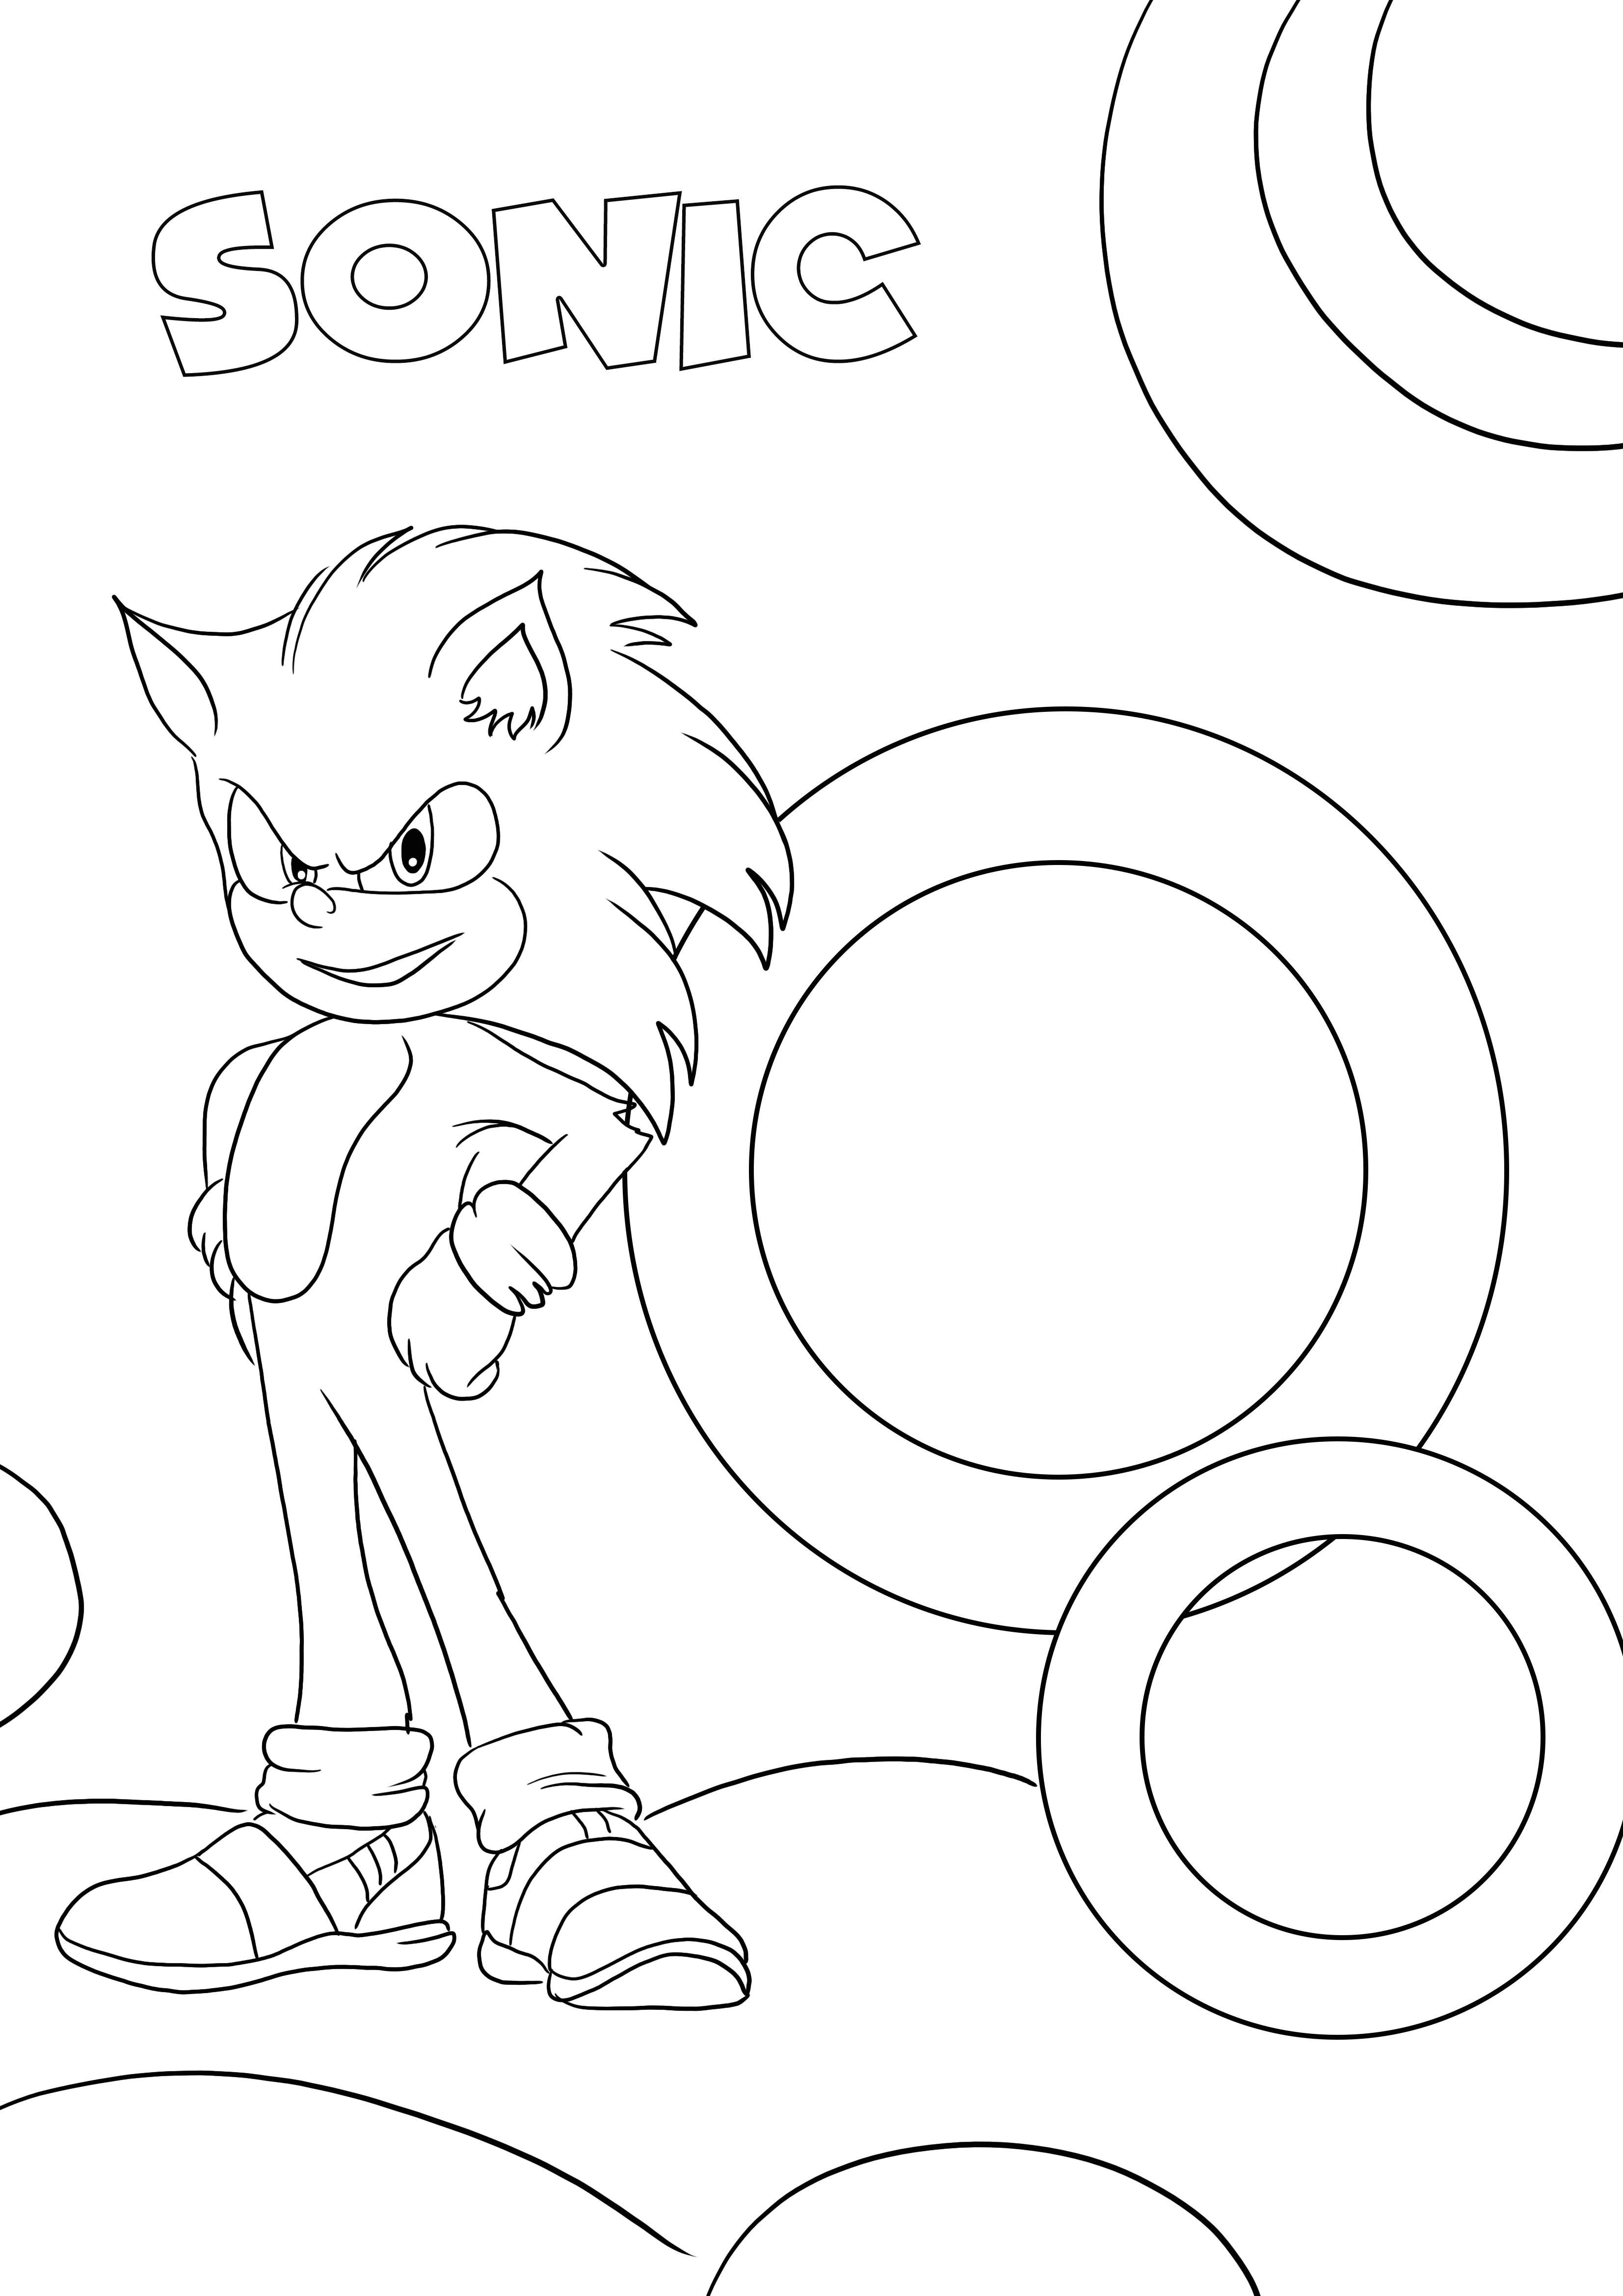 Personaggio di Sonic preferito per la stampa e la colorazione gratuite